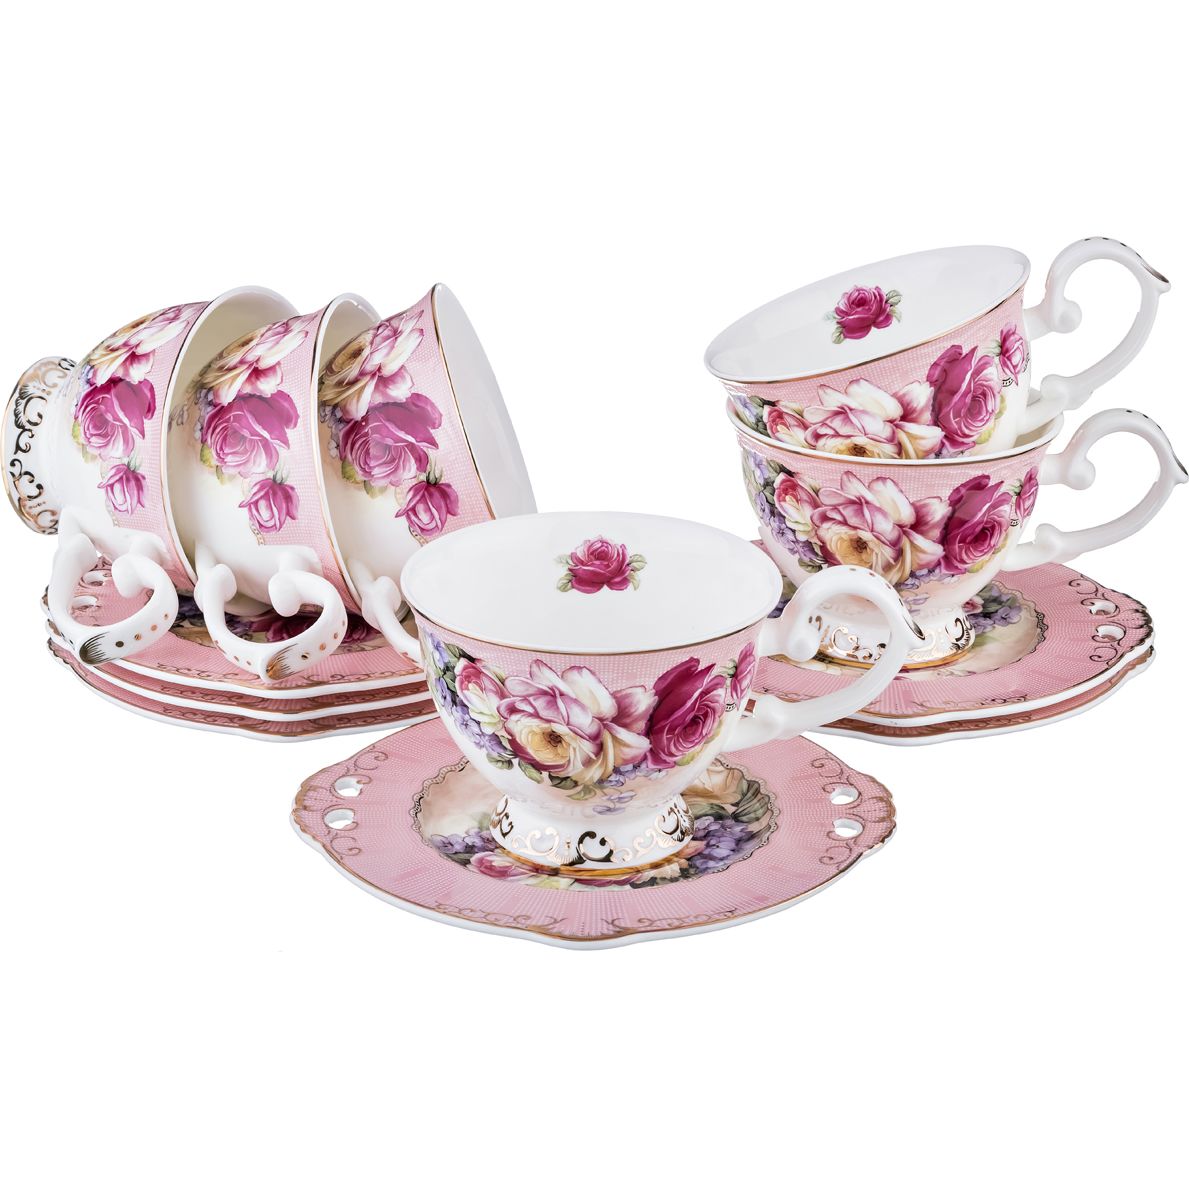 Чайный набор Montana (12 предметов, 200 мл), размер 200 мл - 6 шт, цвет розовый lfr368953 Чайный набор Montana (12 предметов, 200 мл) - фото 1